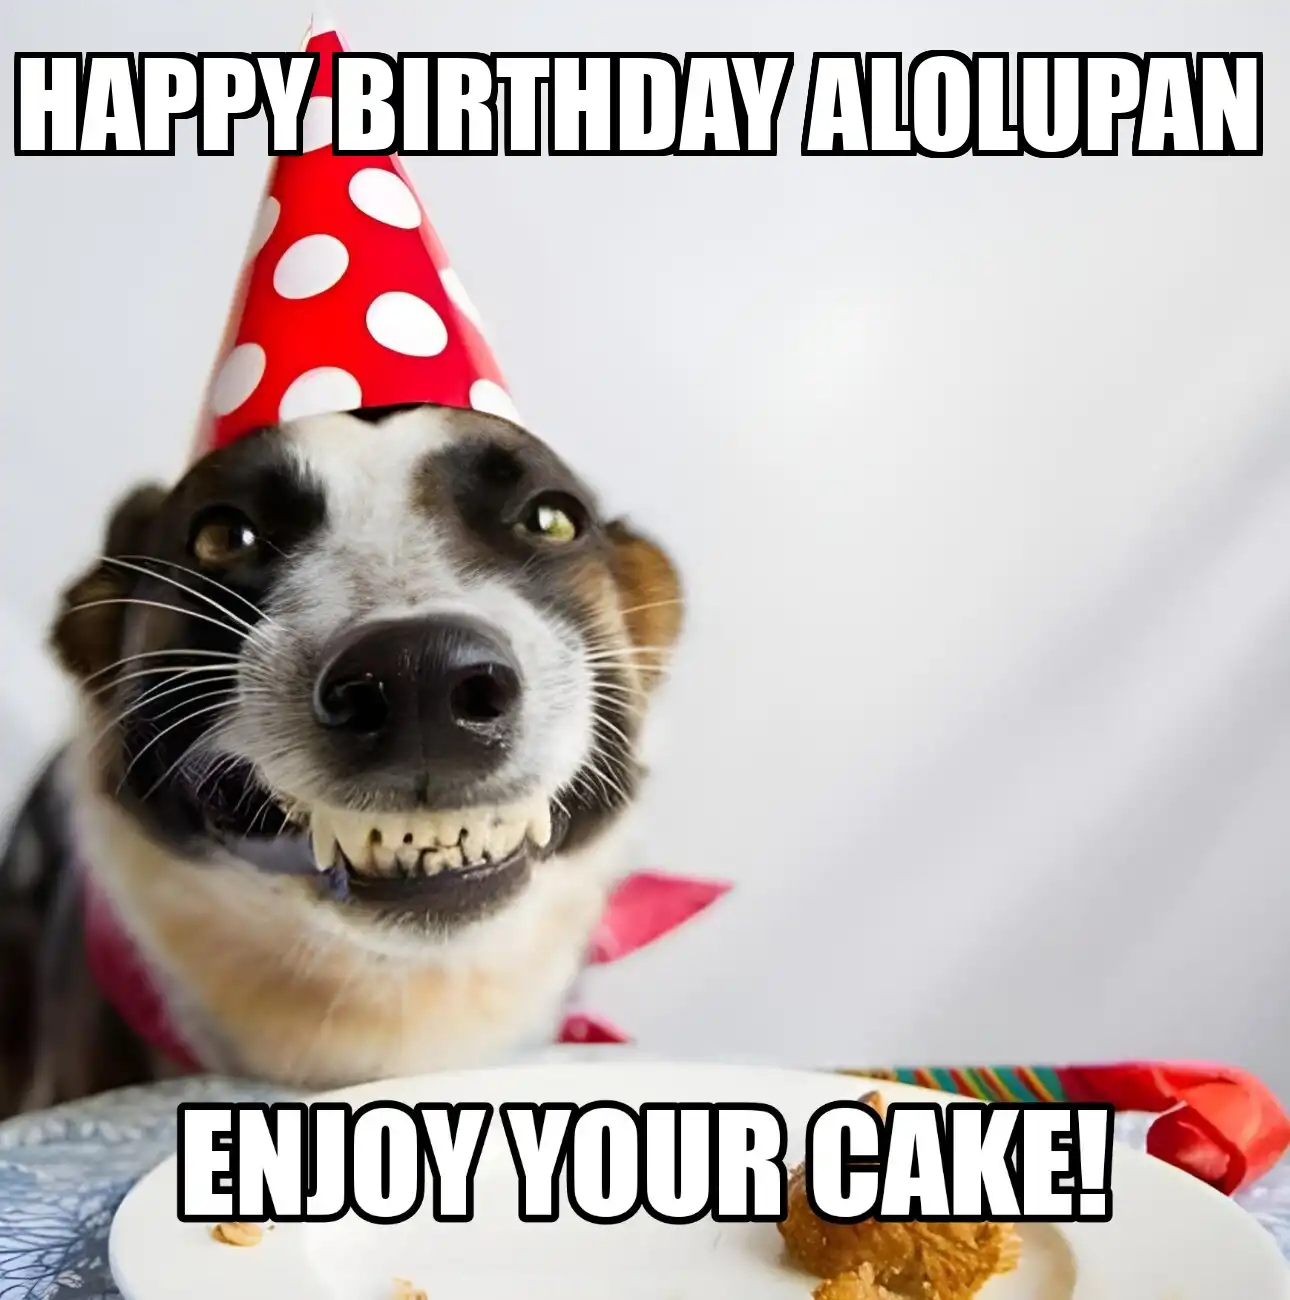 Happy Birthday Alolupan Enjoy Your Cake Dog Meme